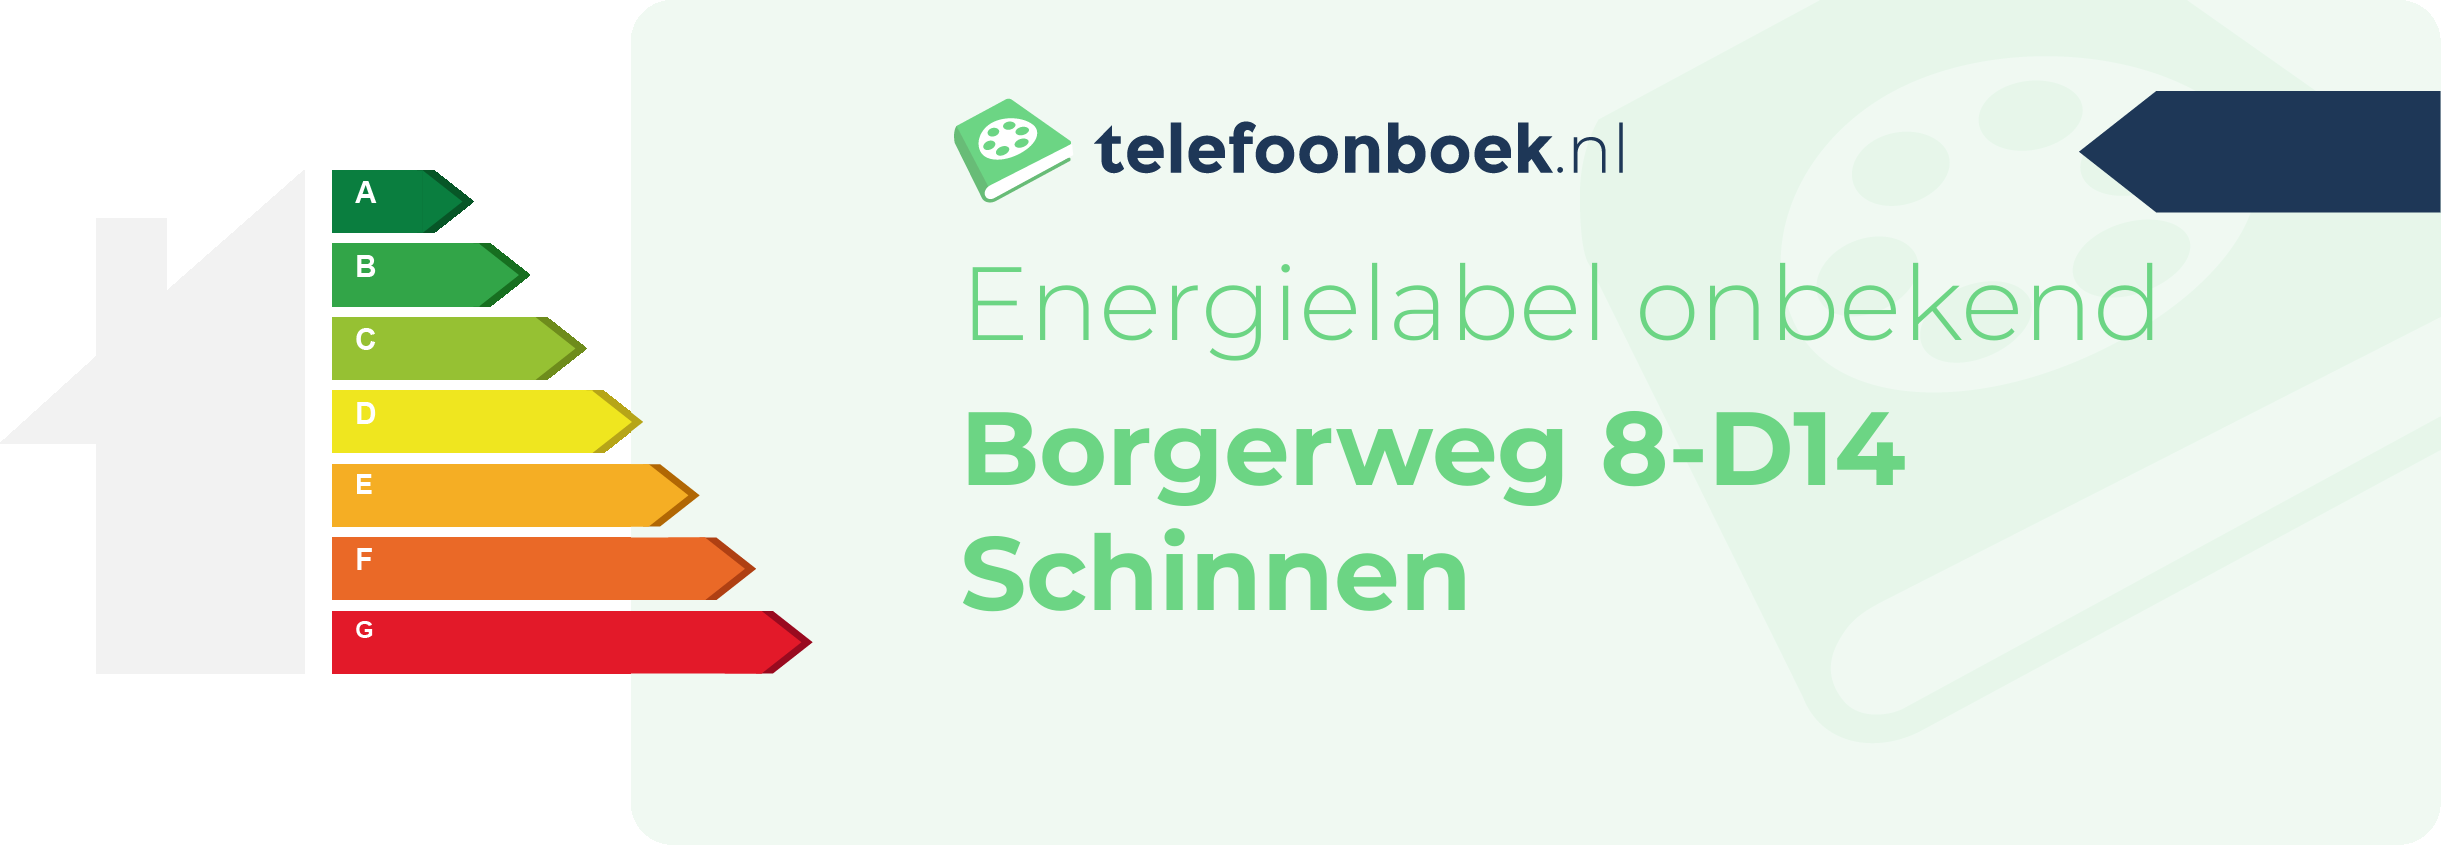 Energielabel Borgerweg 8-D14 Schinnen